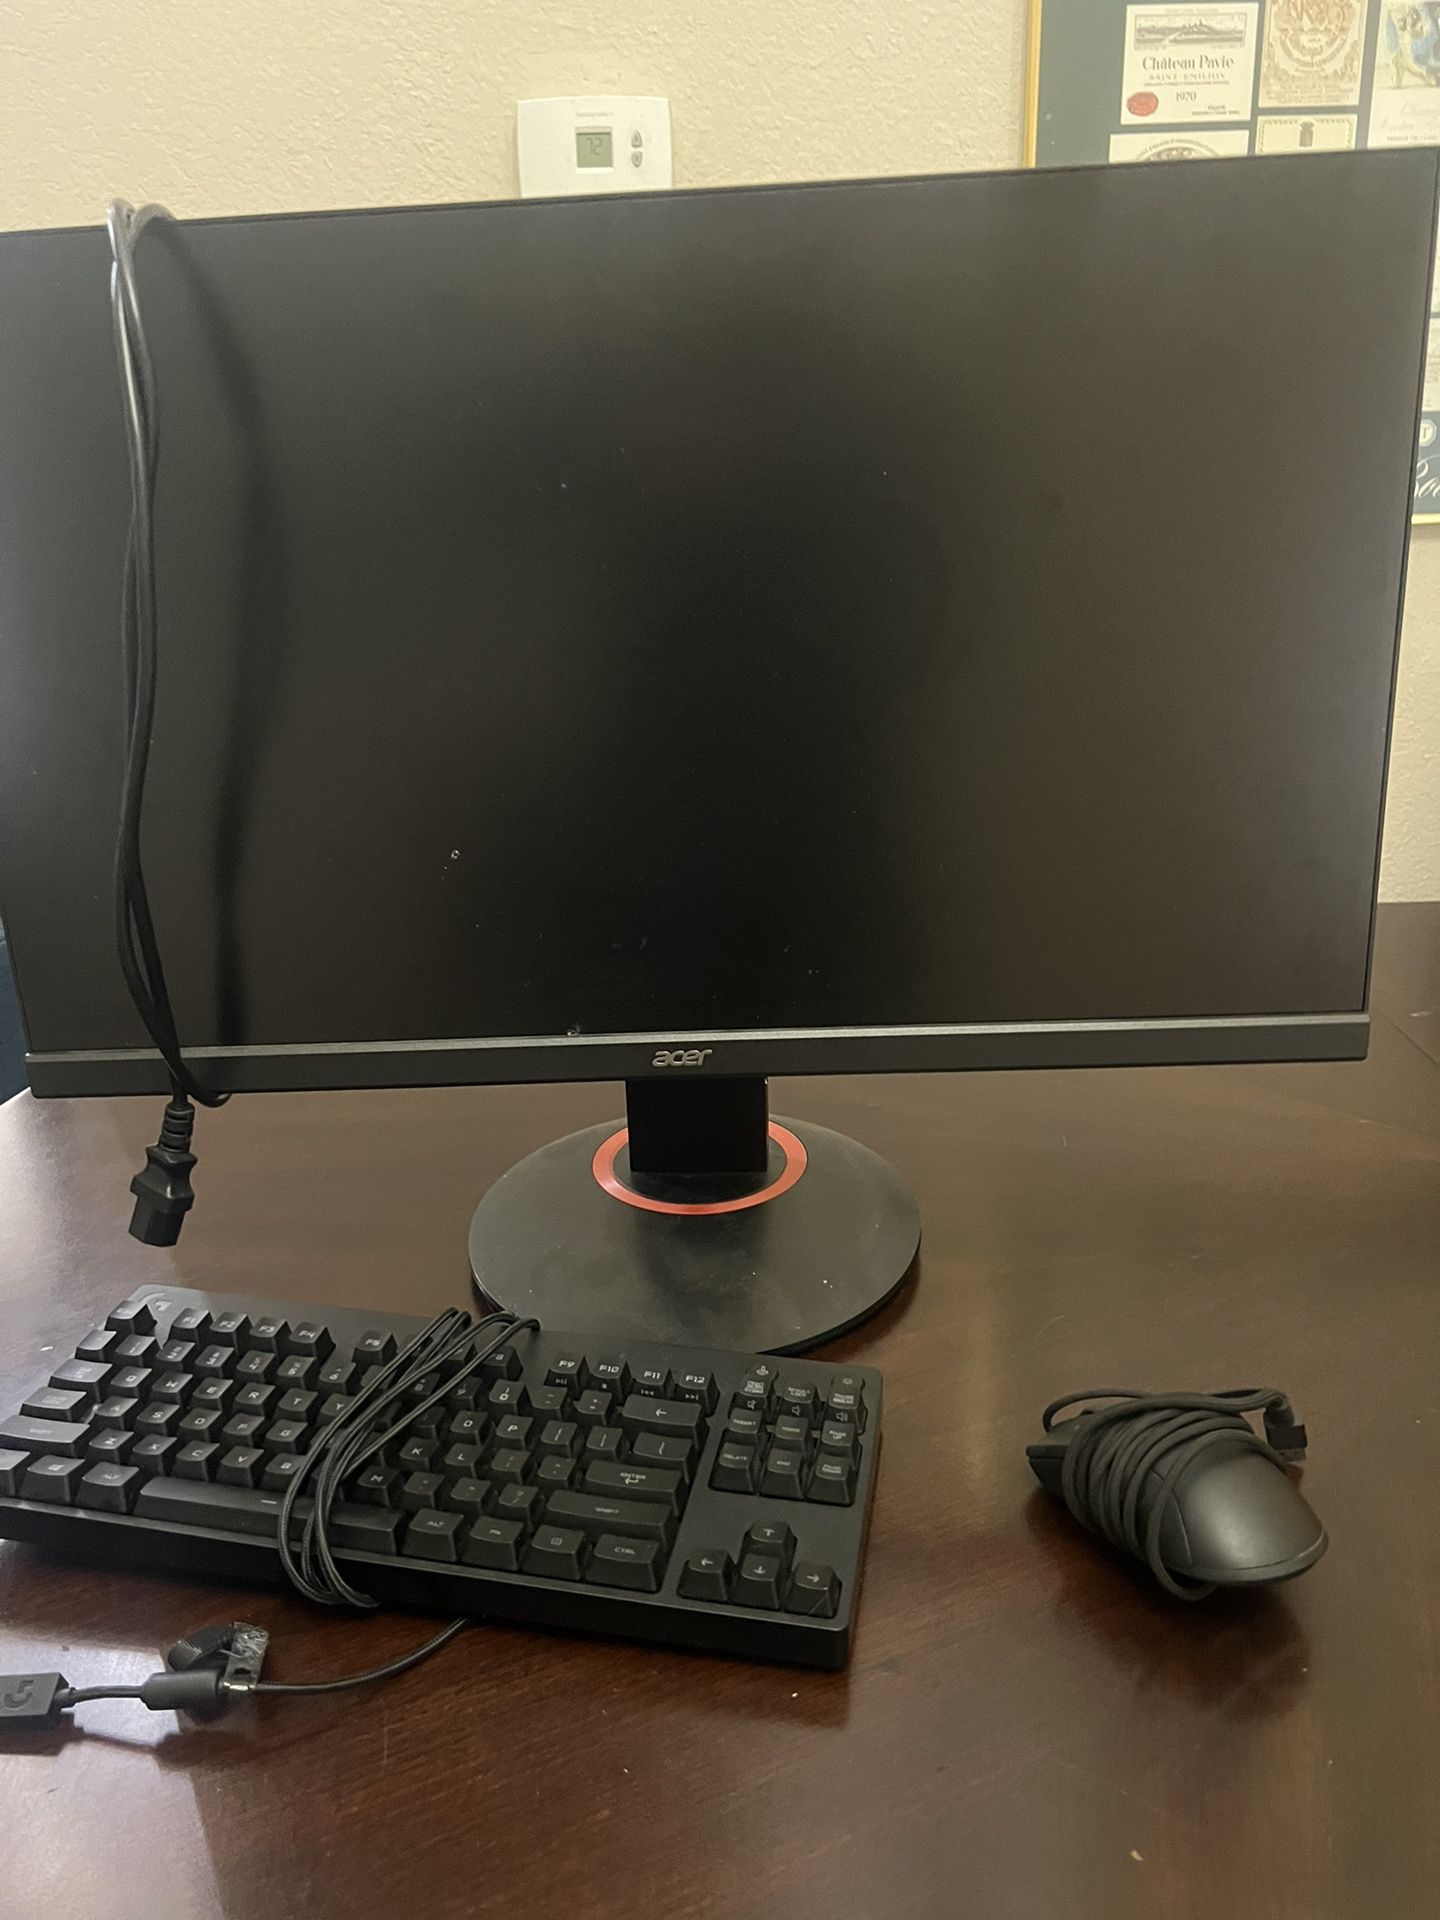 Computer Monitor + Gaming Keyboard + Mouse